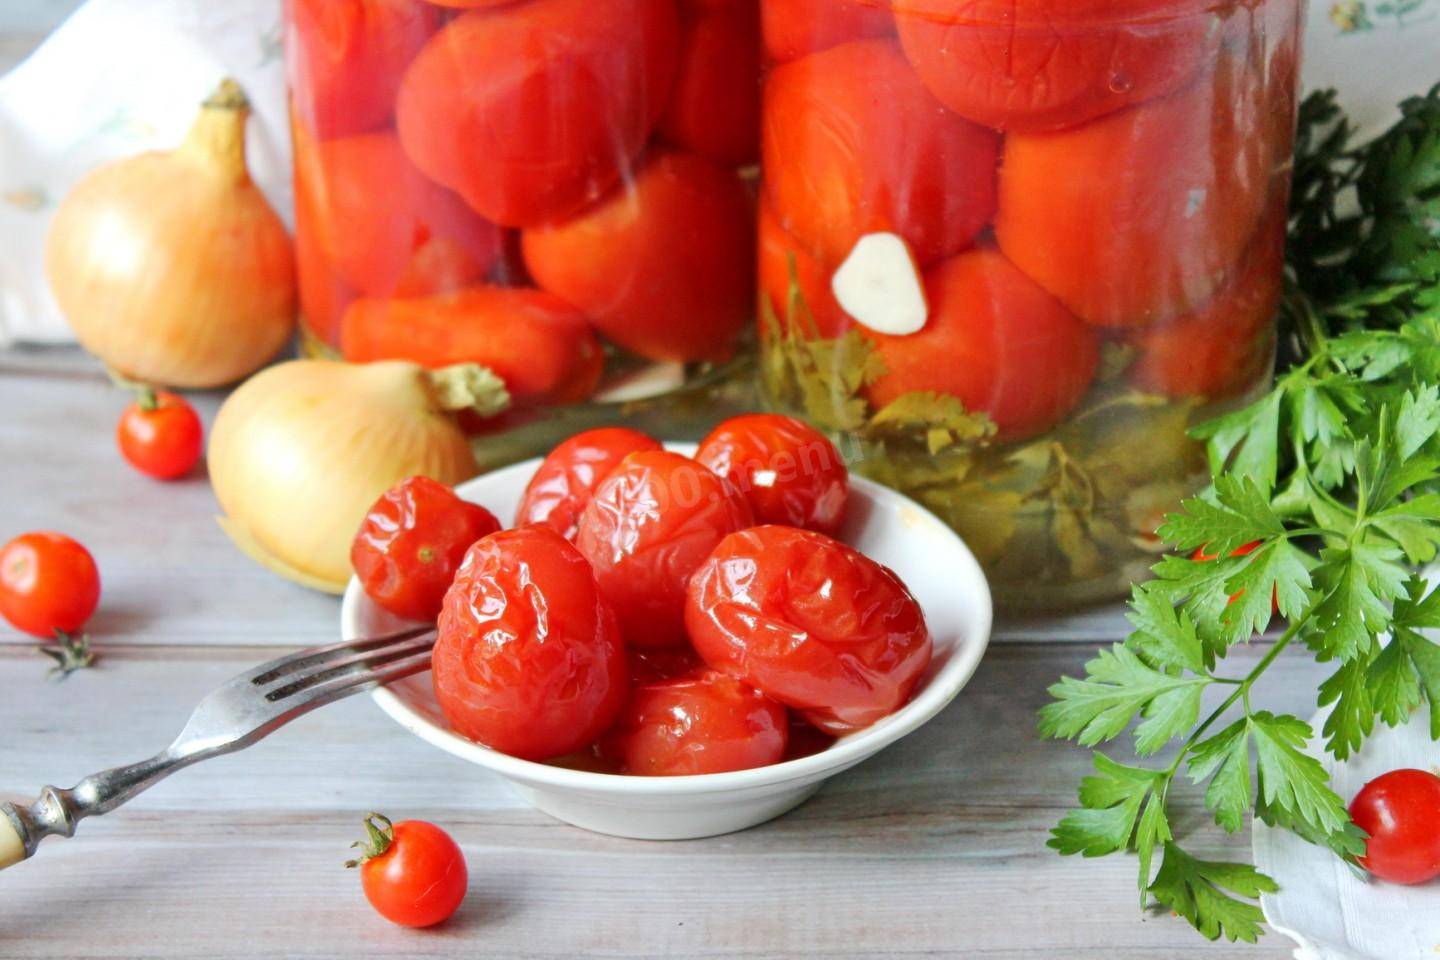 Соленые помидоры в банках, как бочковые: 6 простых рецептов